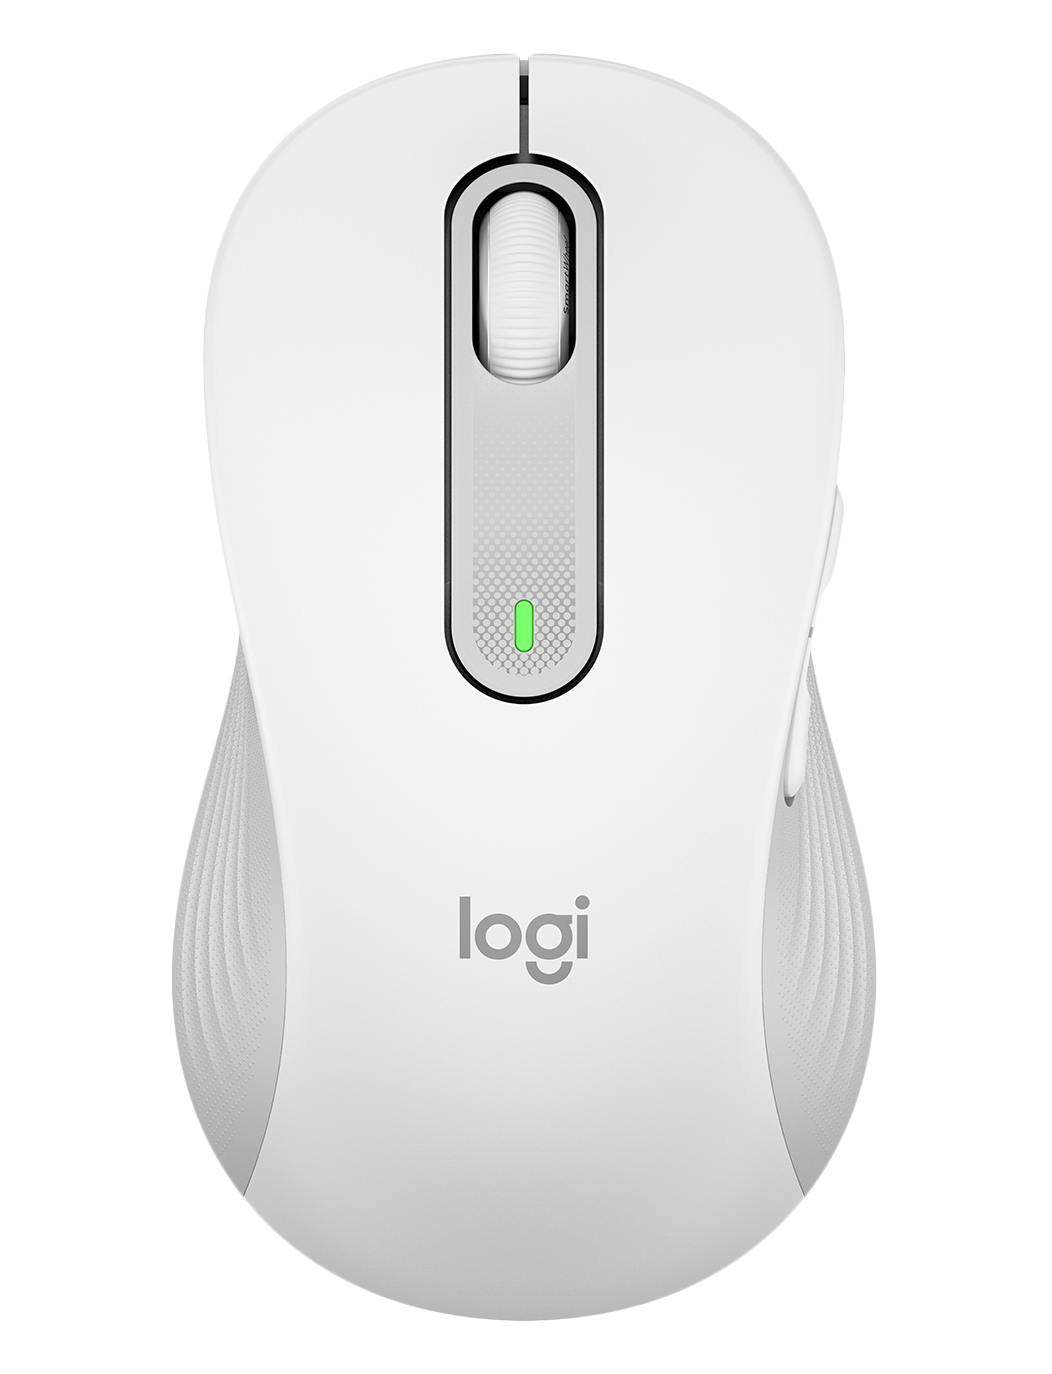 LOGITECH M650L Signature Bluetooth Mouse - OFF-WHITE - LEFT